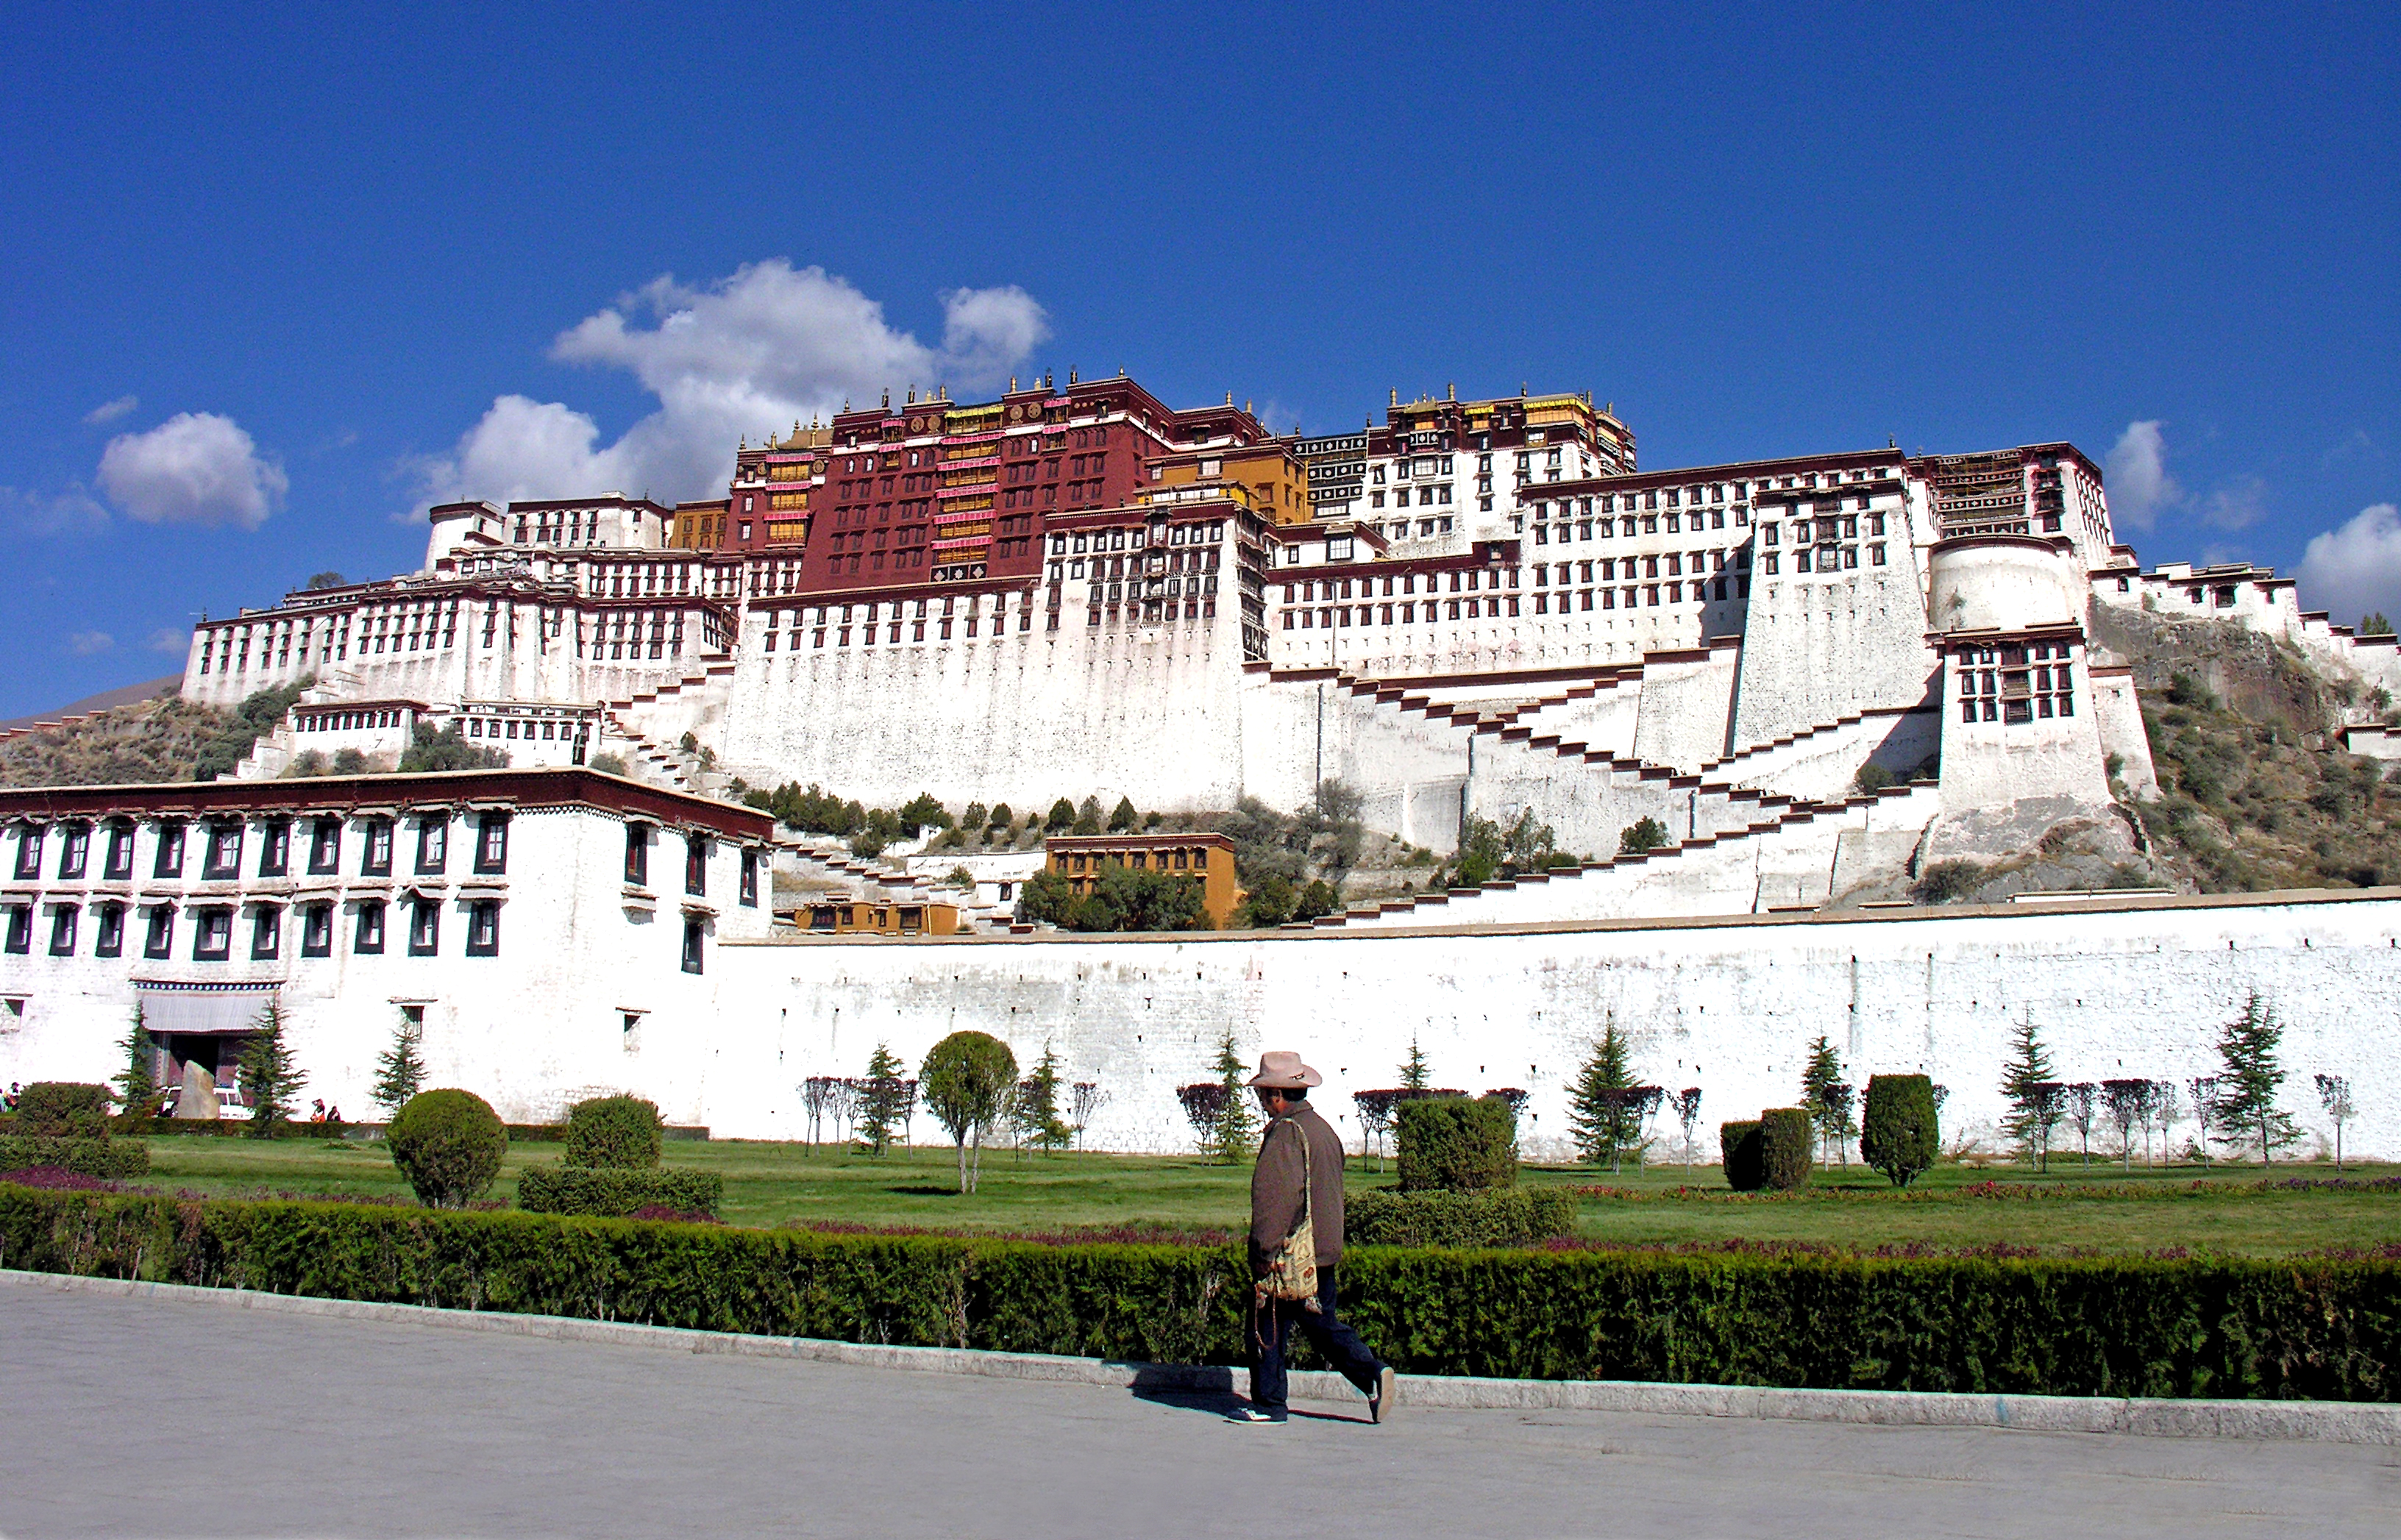 Tempat Wisata Unik Di Tibet yang Wajib Anda Kunjungi